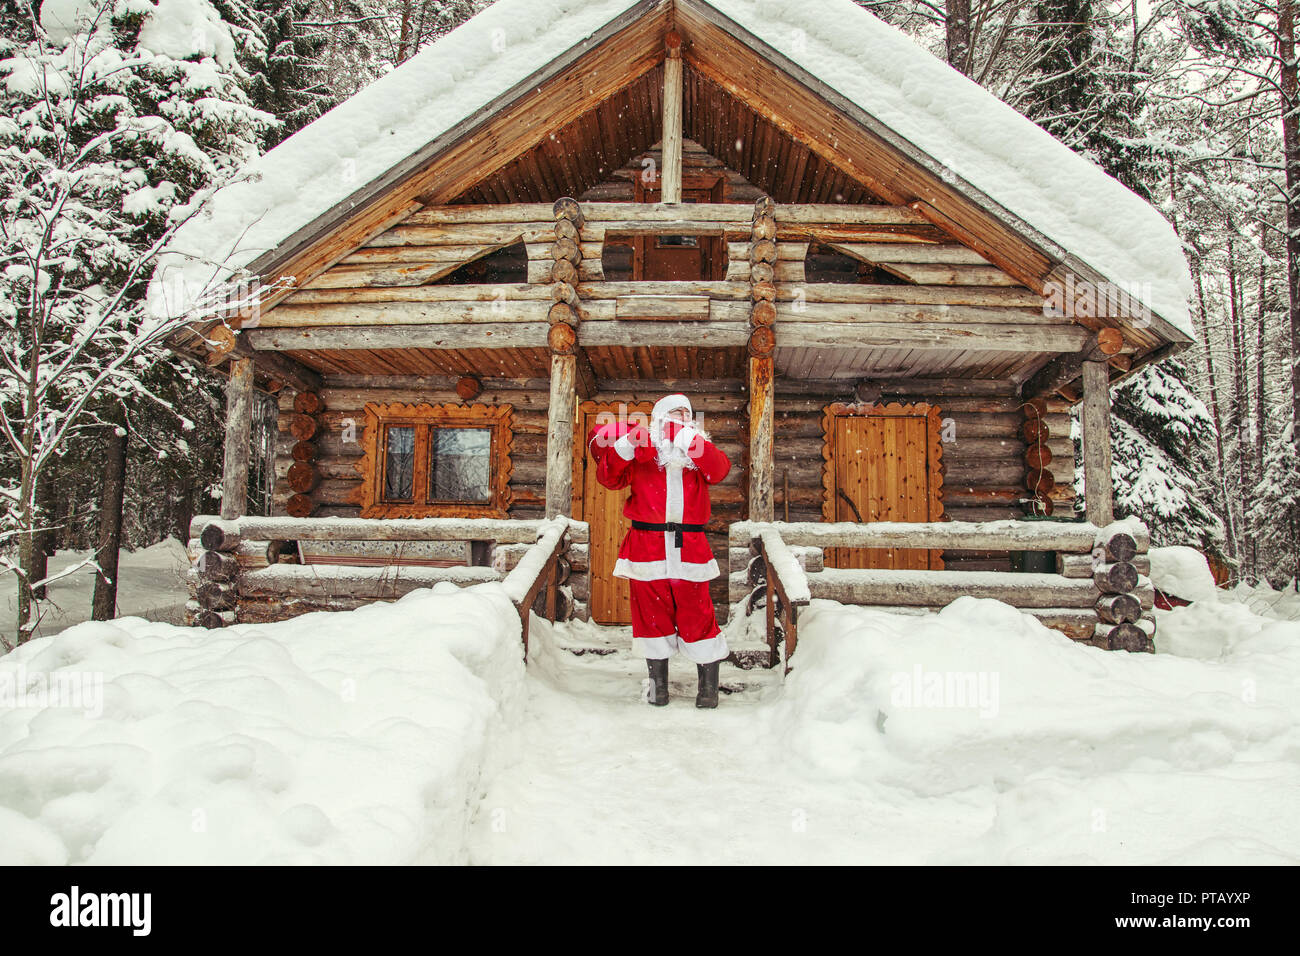 Casa Babbo Natale Polo Nord.La Vita Quotidiana Di Santa Claus Casa Di Babbo Natale Al Polo Nord Foto Stock Alamy